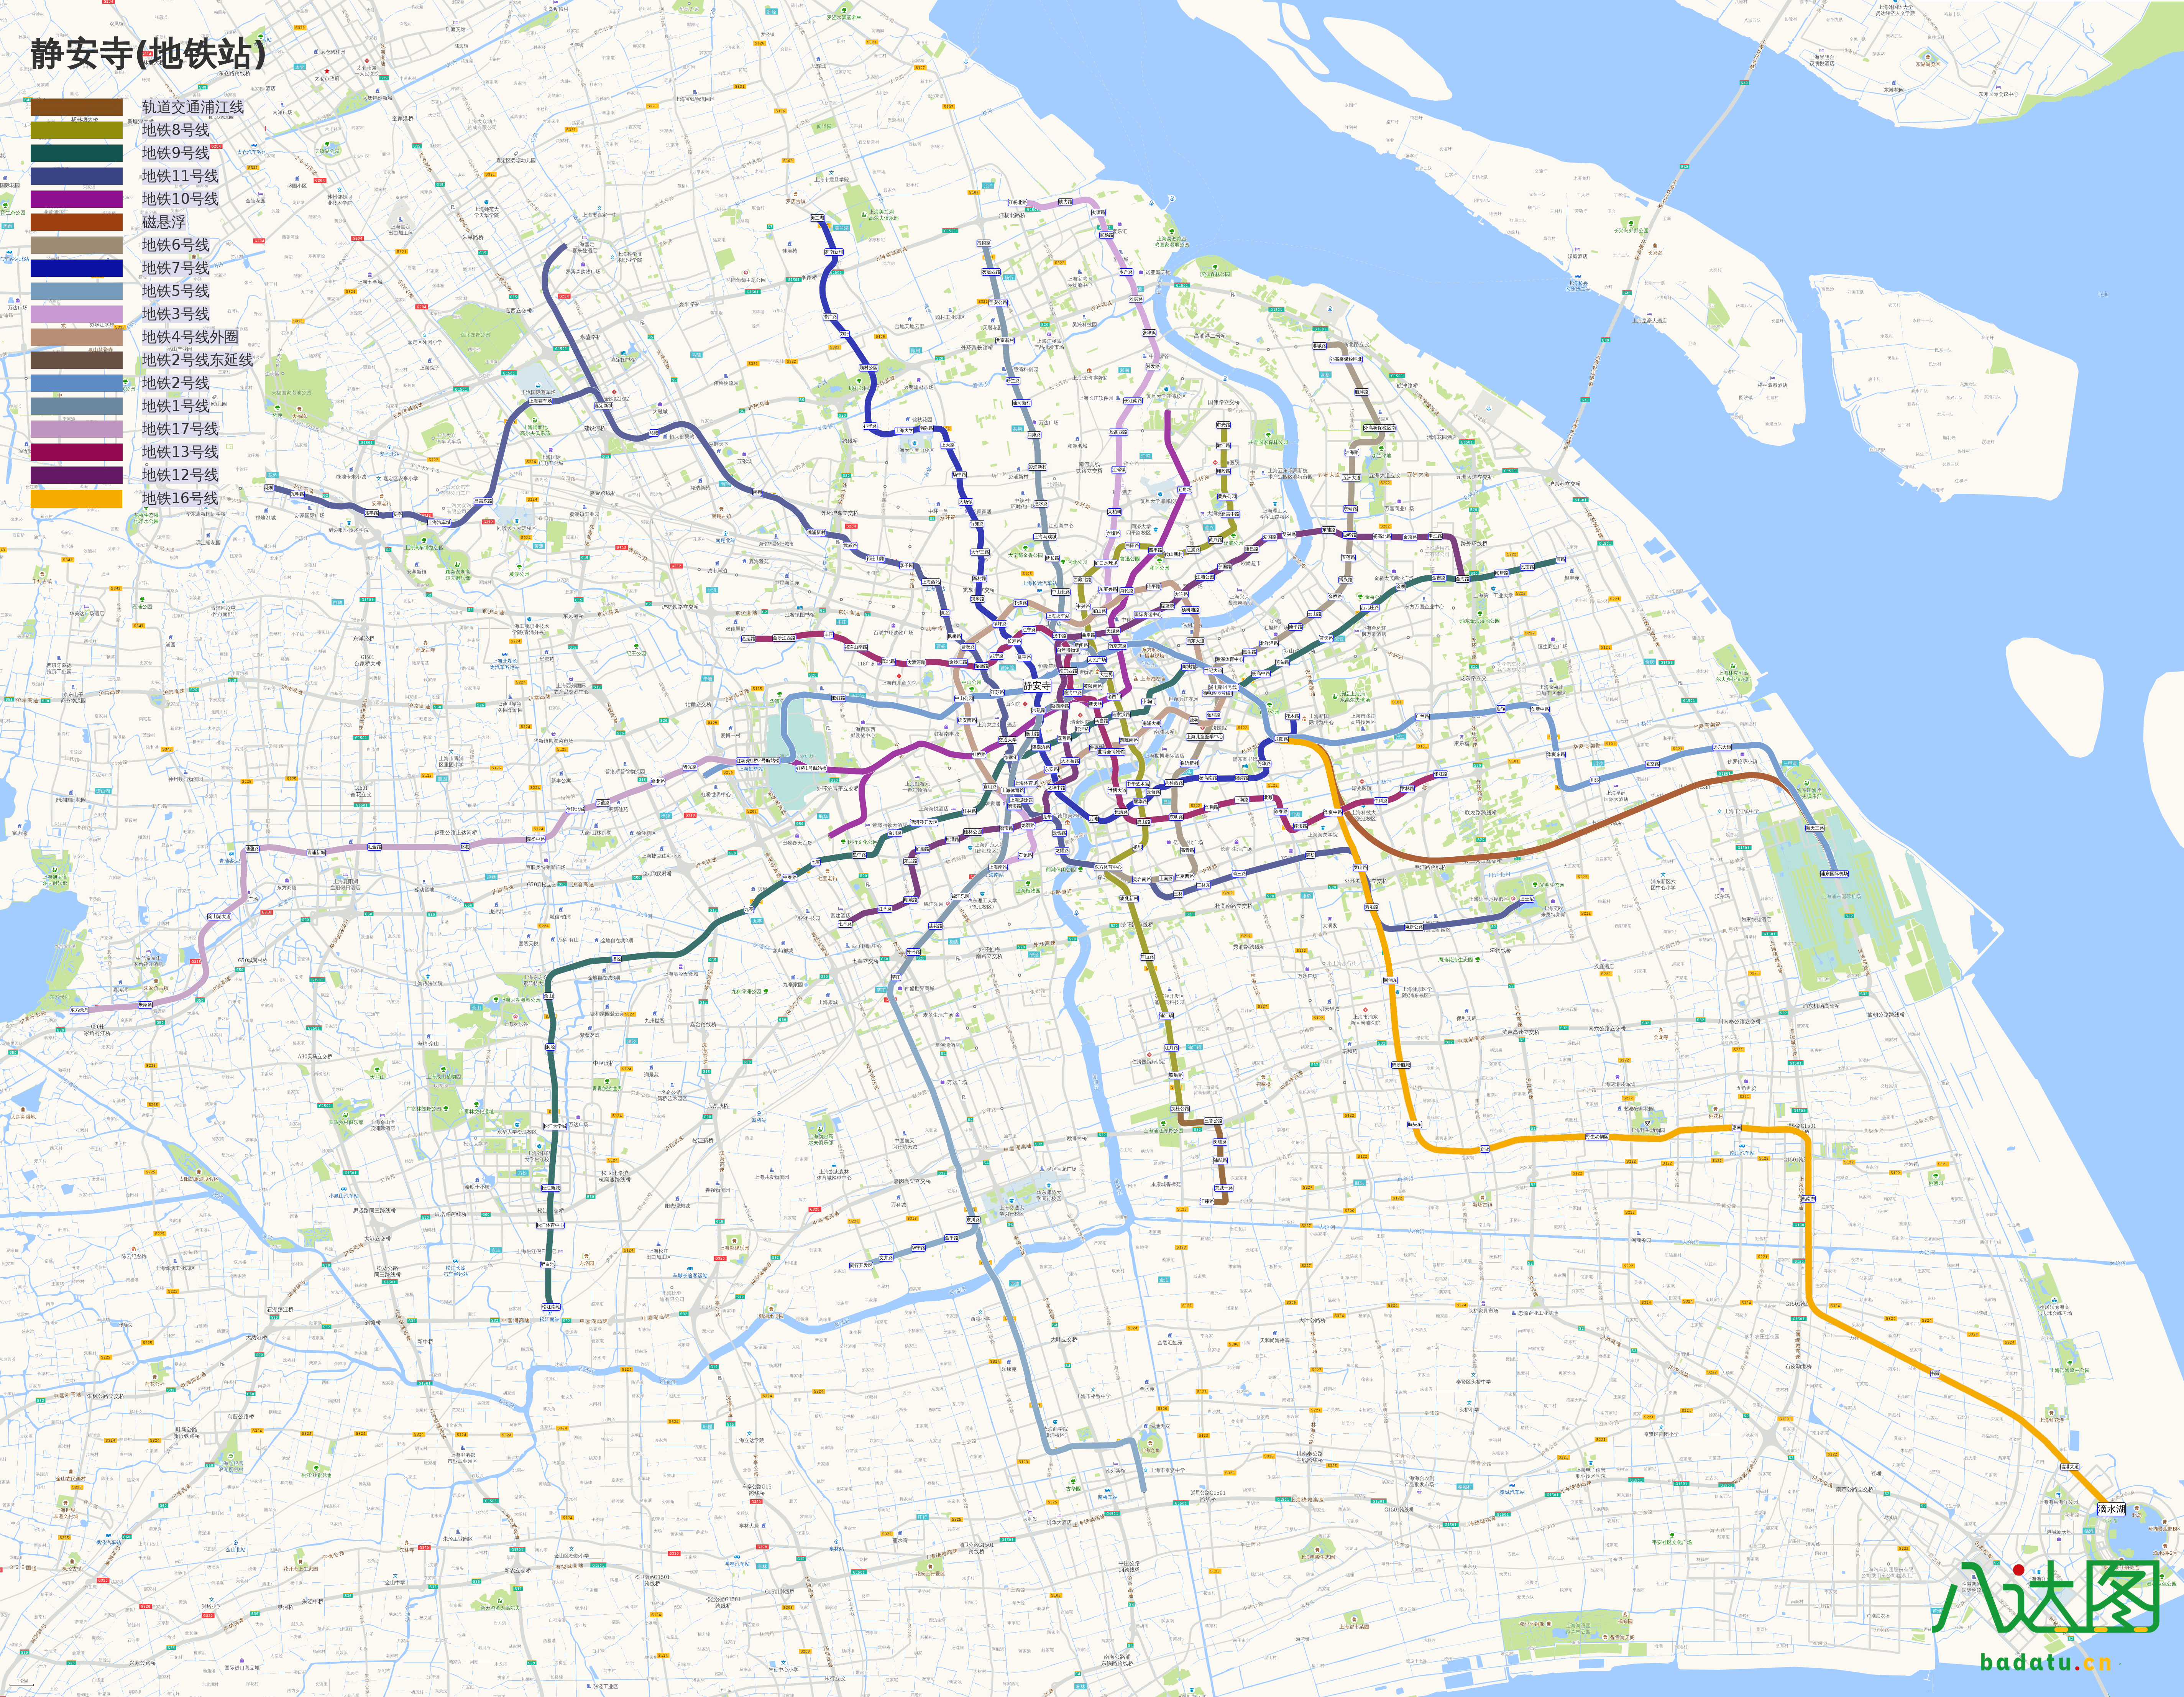 上海地铁线路图(2019年春季版)